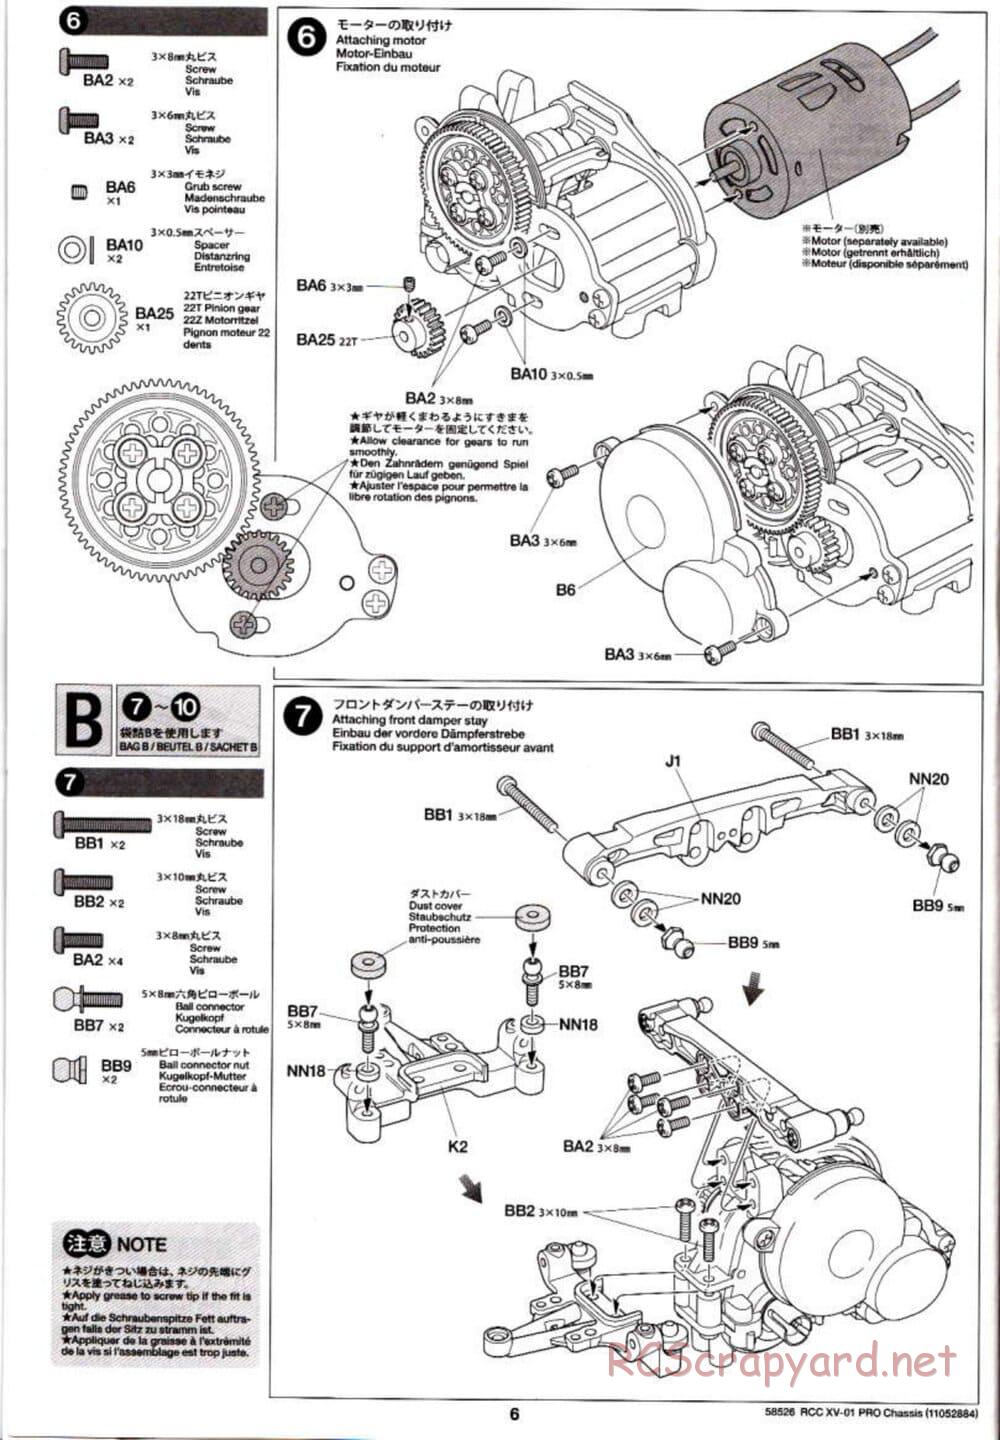 Tamiya - XV-01 PRO Chassis - Manual - Page 6